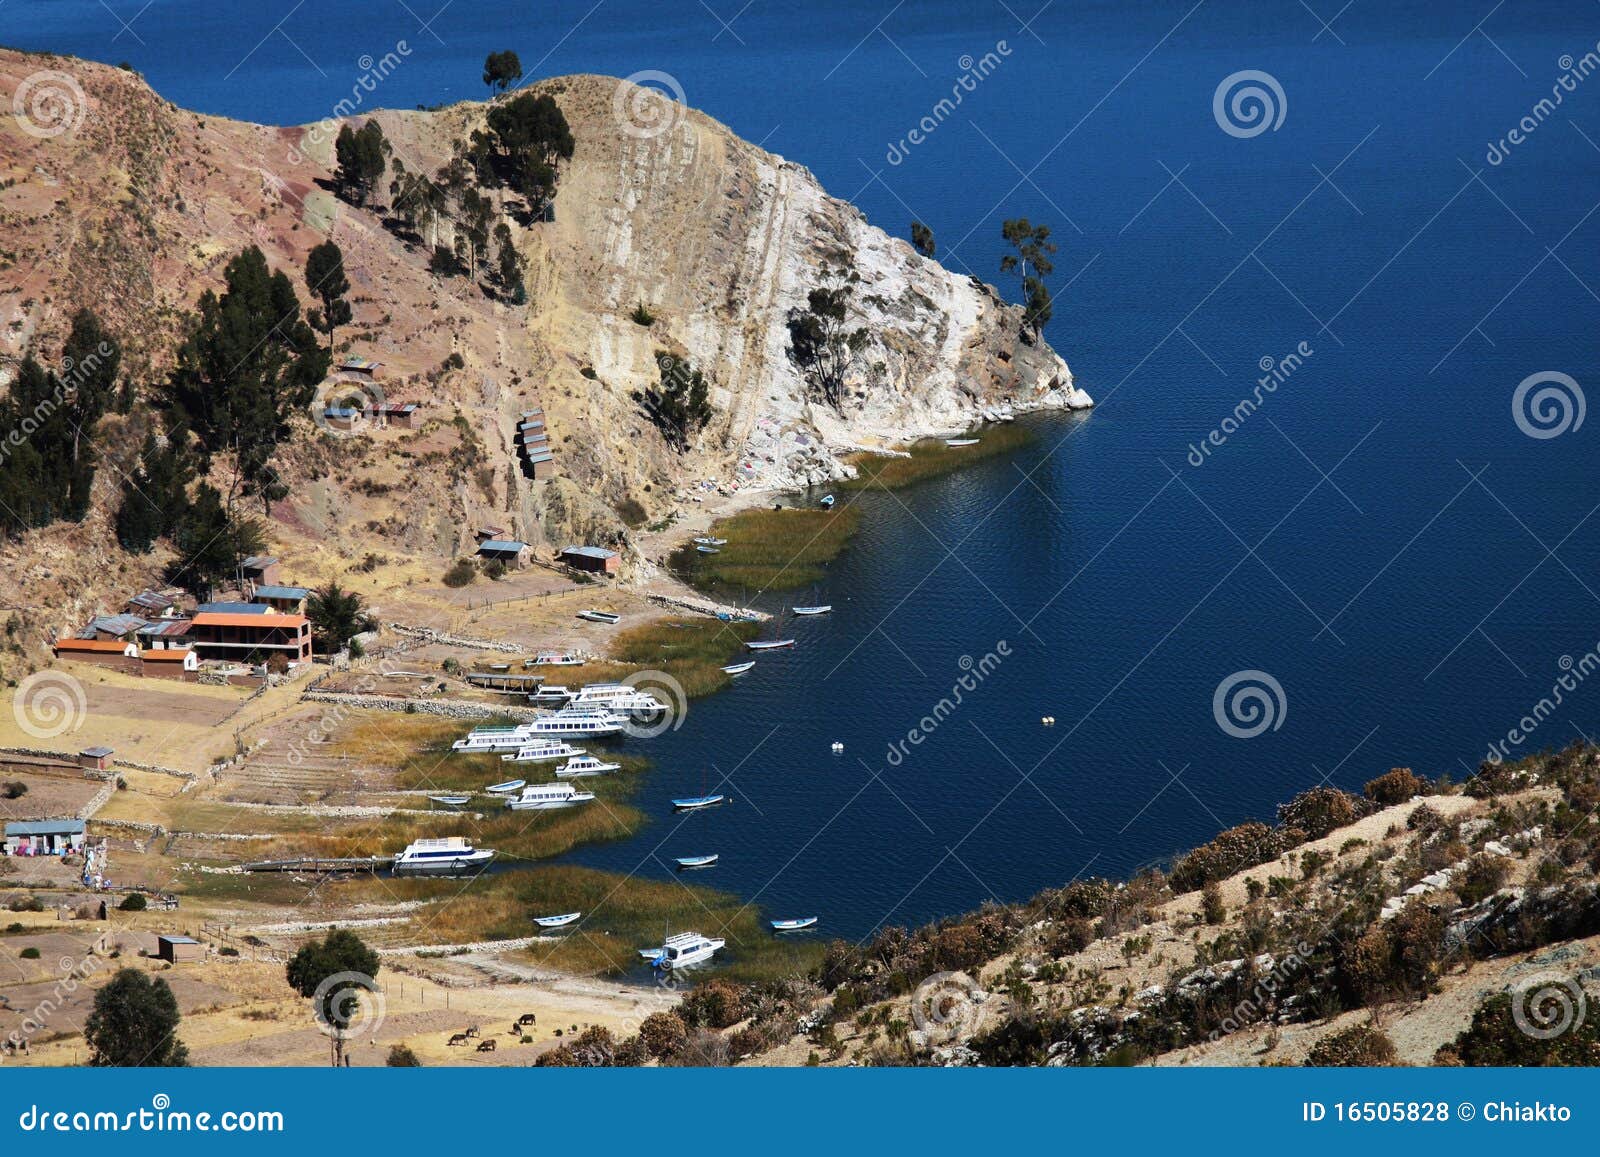 yatch and boats on titicaca lake